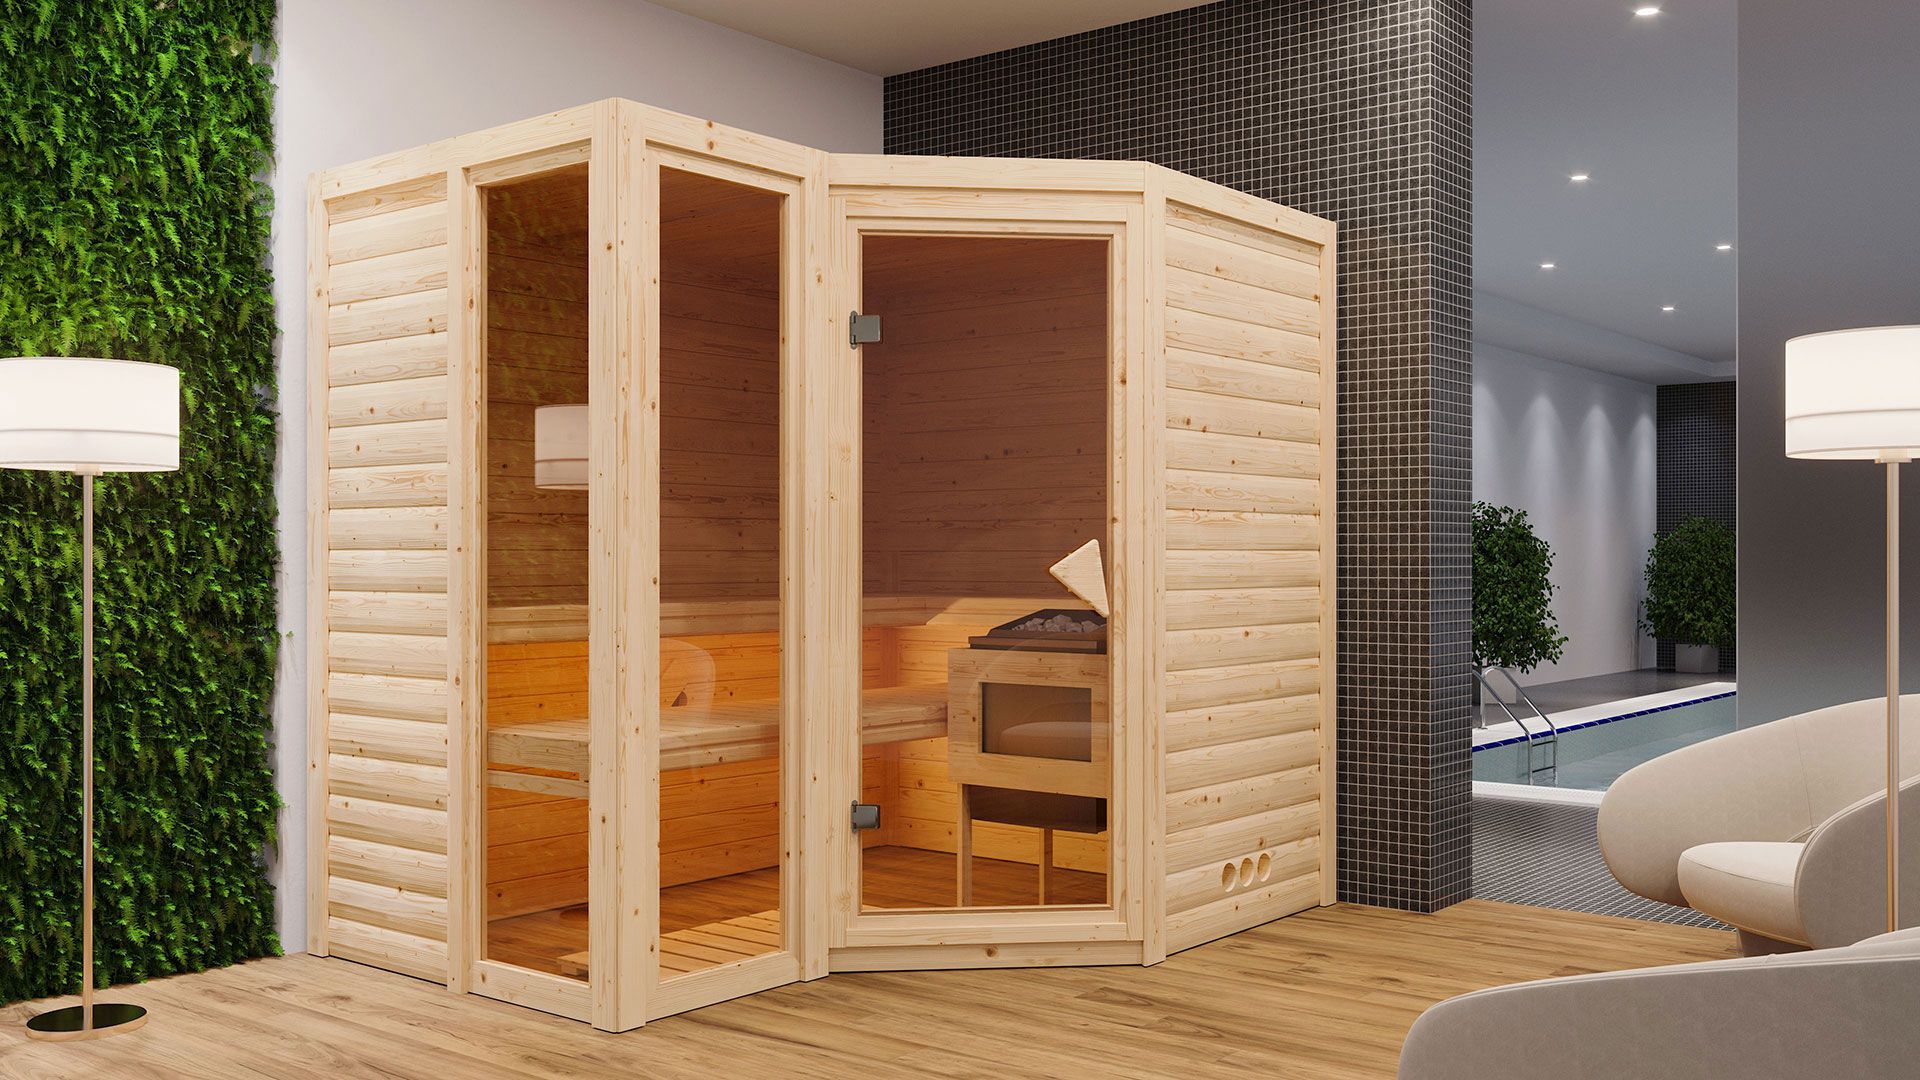 Sauna "Solveig" SET mit bronzierter Tür - Farbe: Natur, Ofen externe Steuerung easy 9 kW - 236 x 184 x 209 cm (B x T x H)